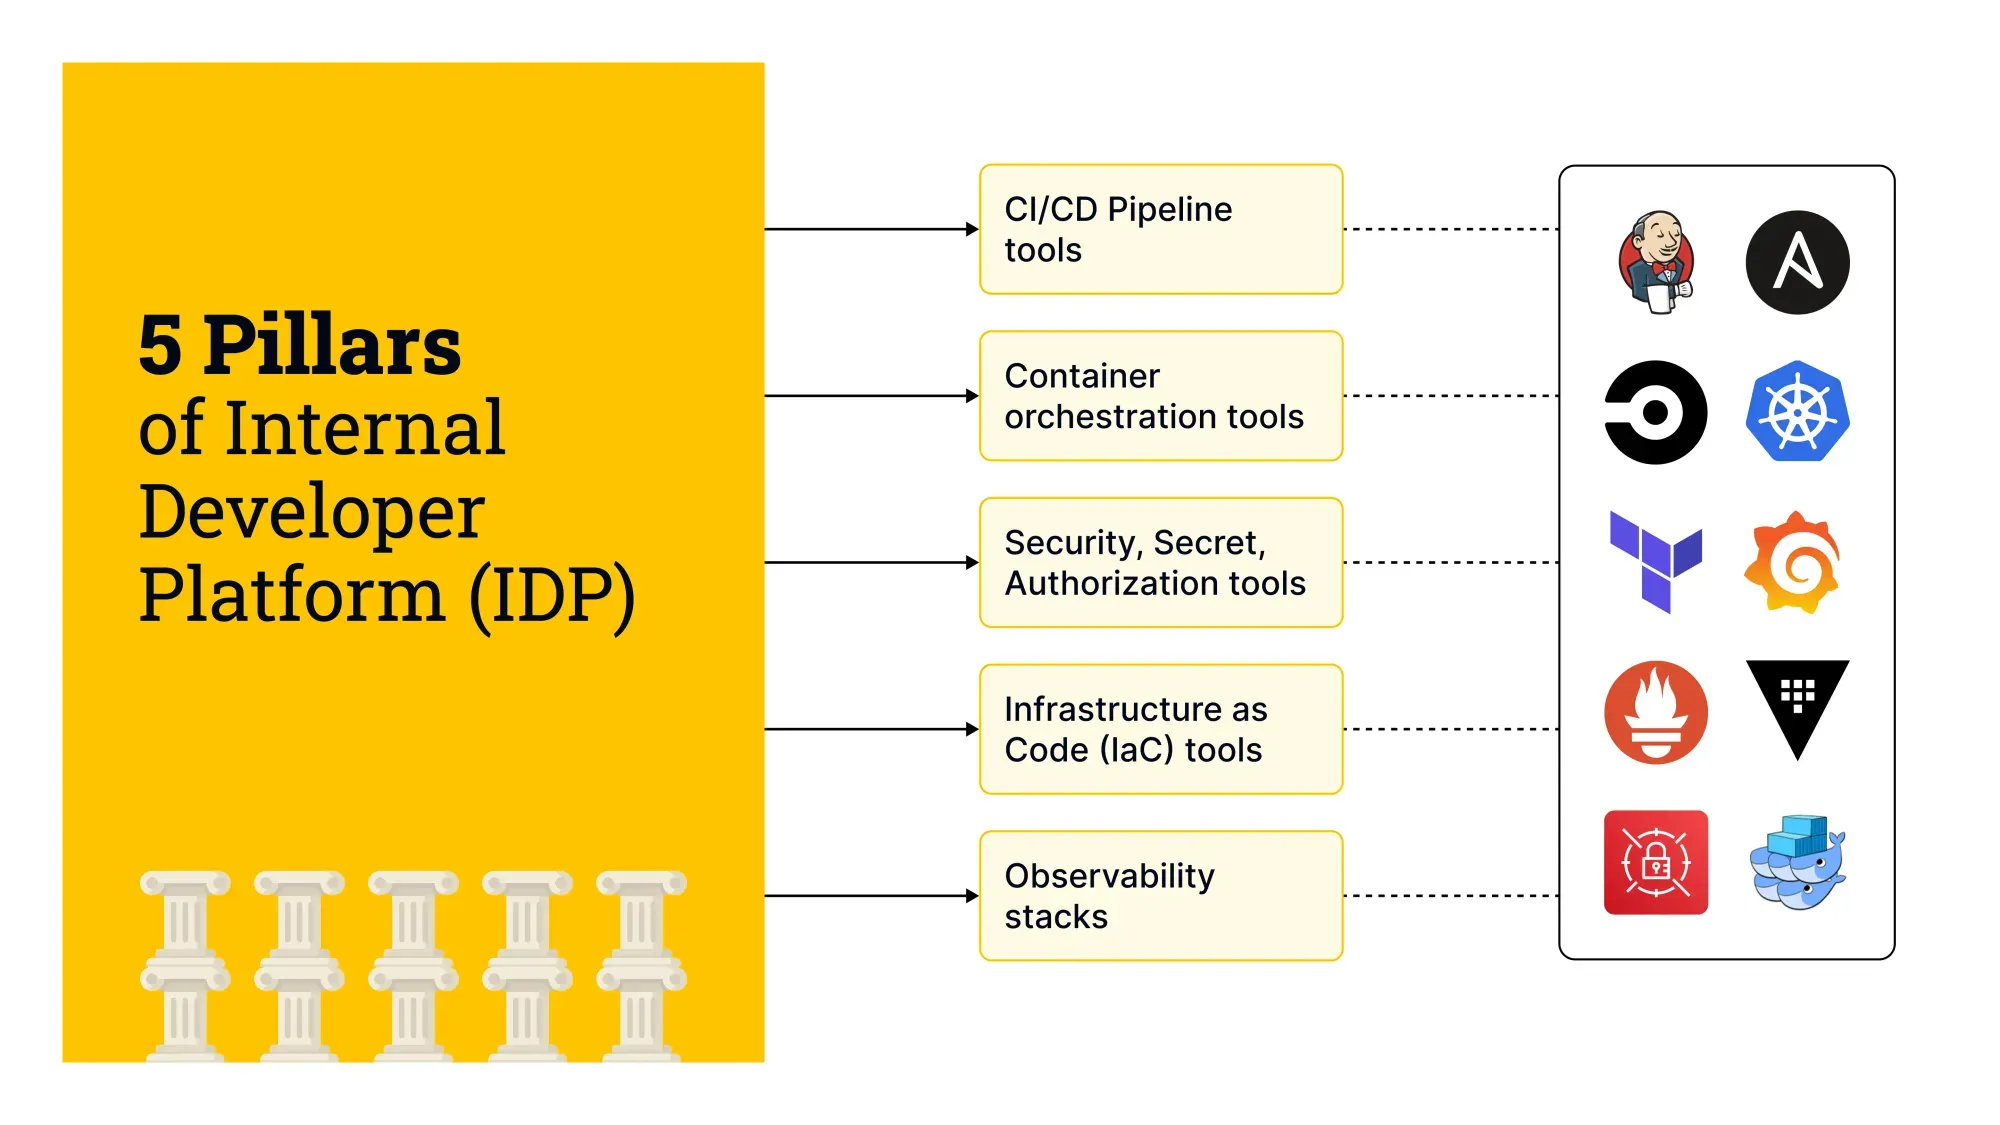 5 Pillars of Internal Developer Platform (IDP)